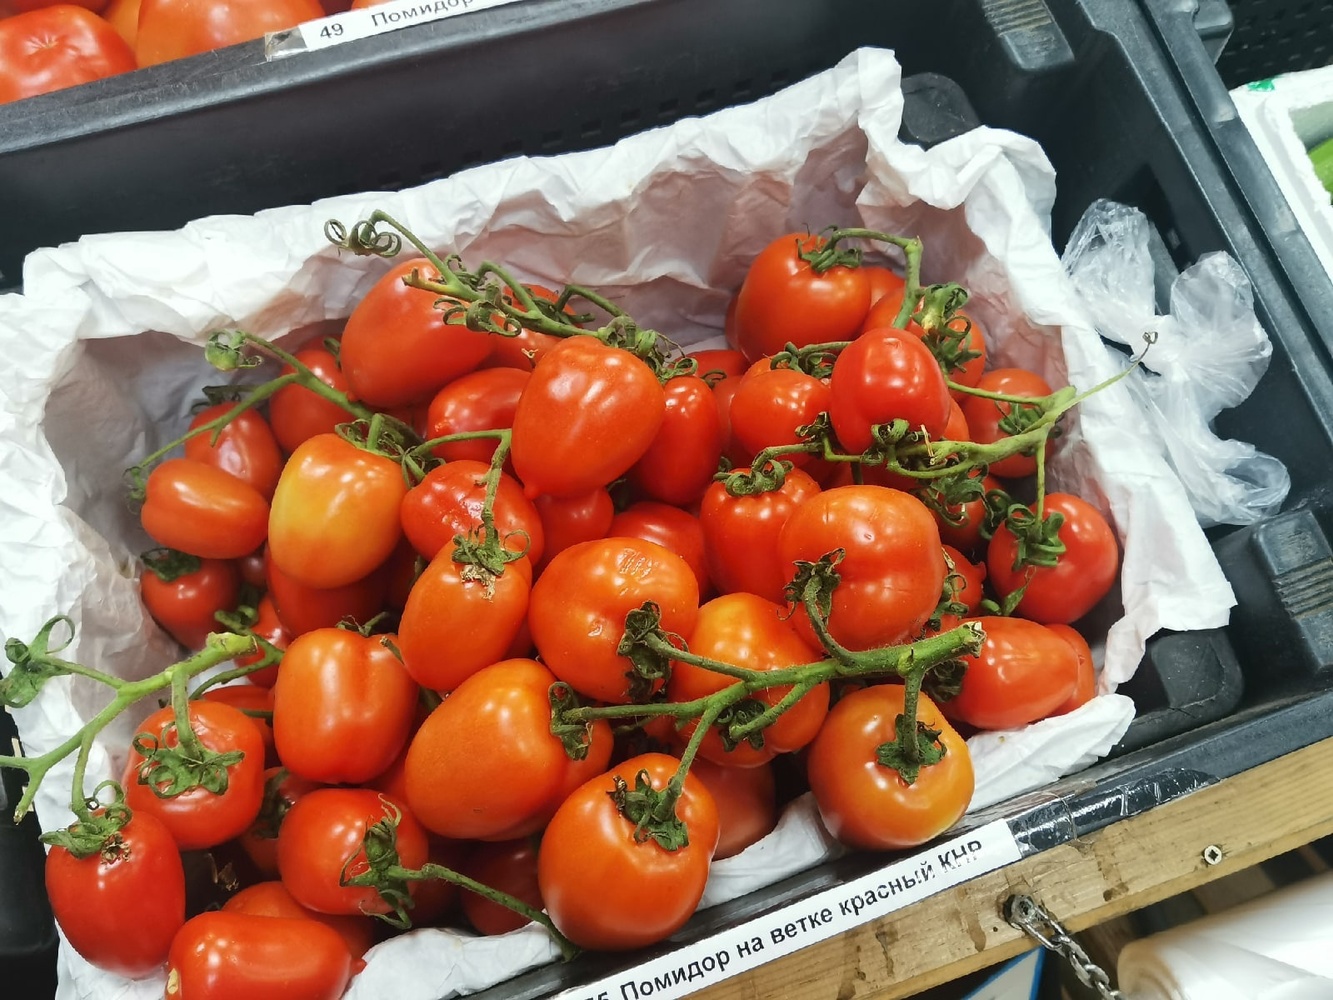 Сахар, молоко, помидоры: как выросли цены на продукты в магазинах Хабаровска